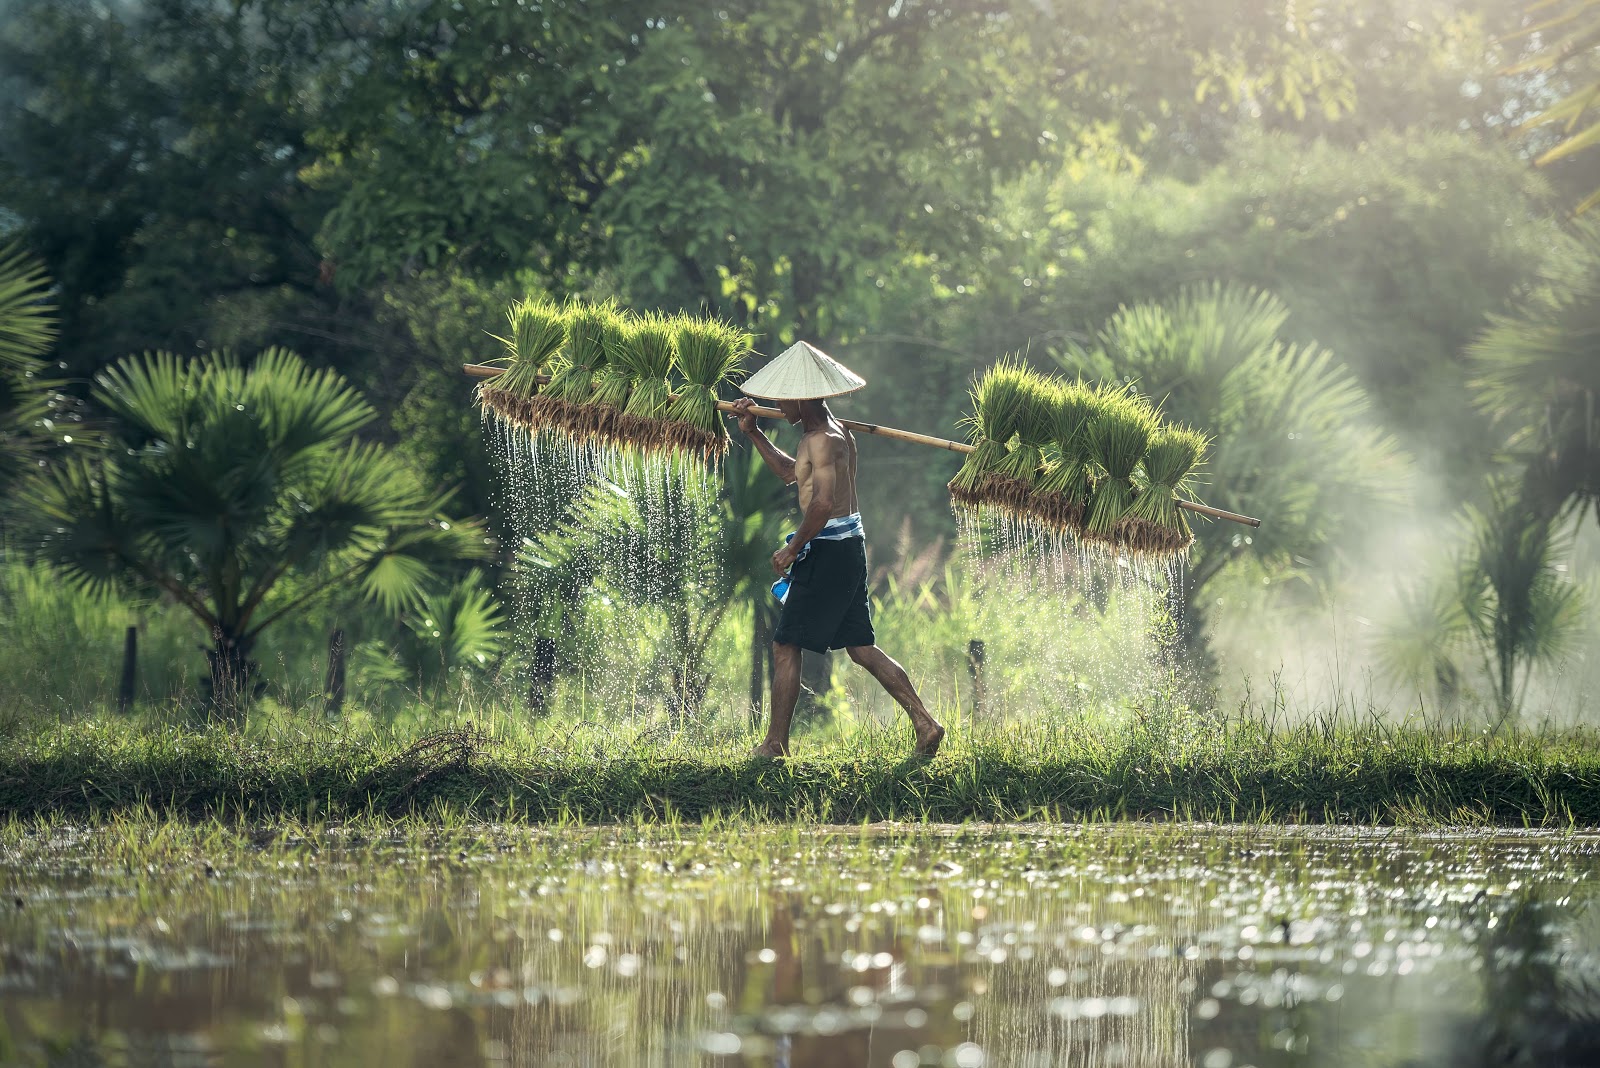 A male rice farmer carries harvested rice as he walks alongside a sunnyrice paddy